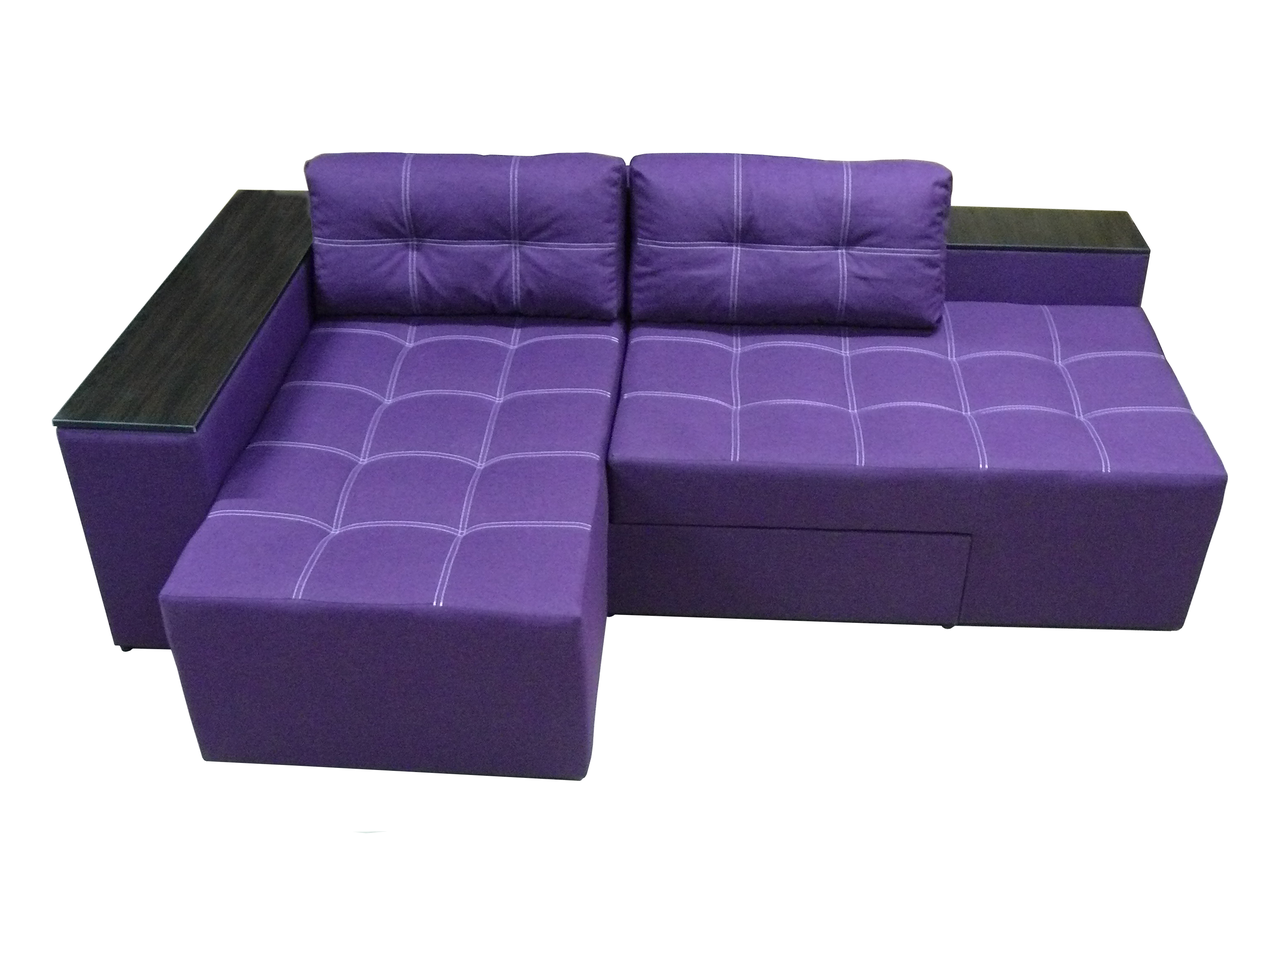 Кутовий диван Доміно (Фіолетовий, 245х160 см) IMI kbvr-sn-13 фото